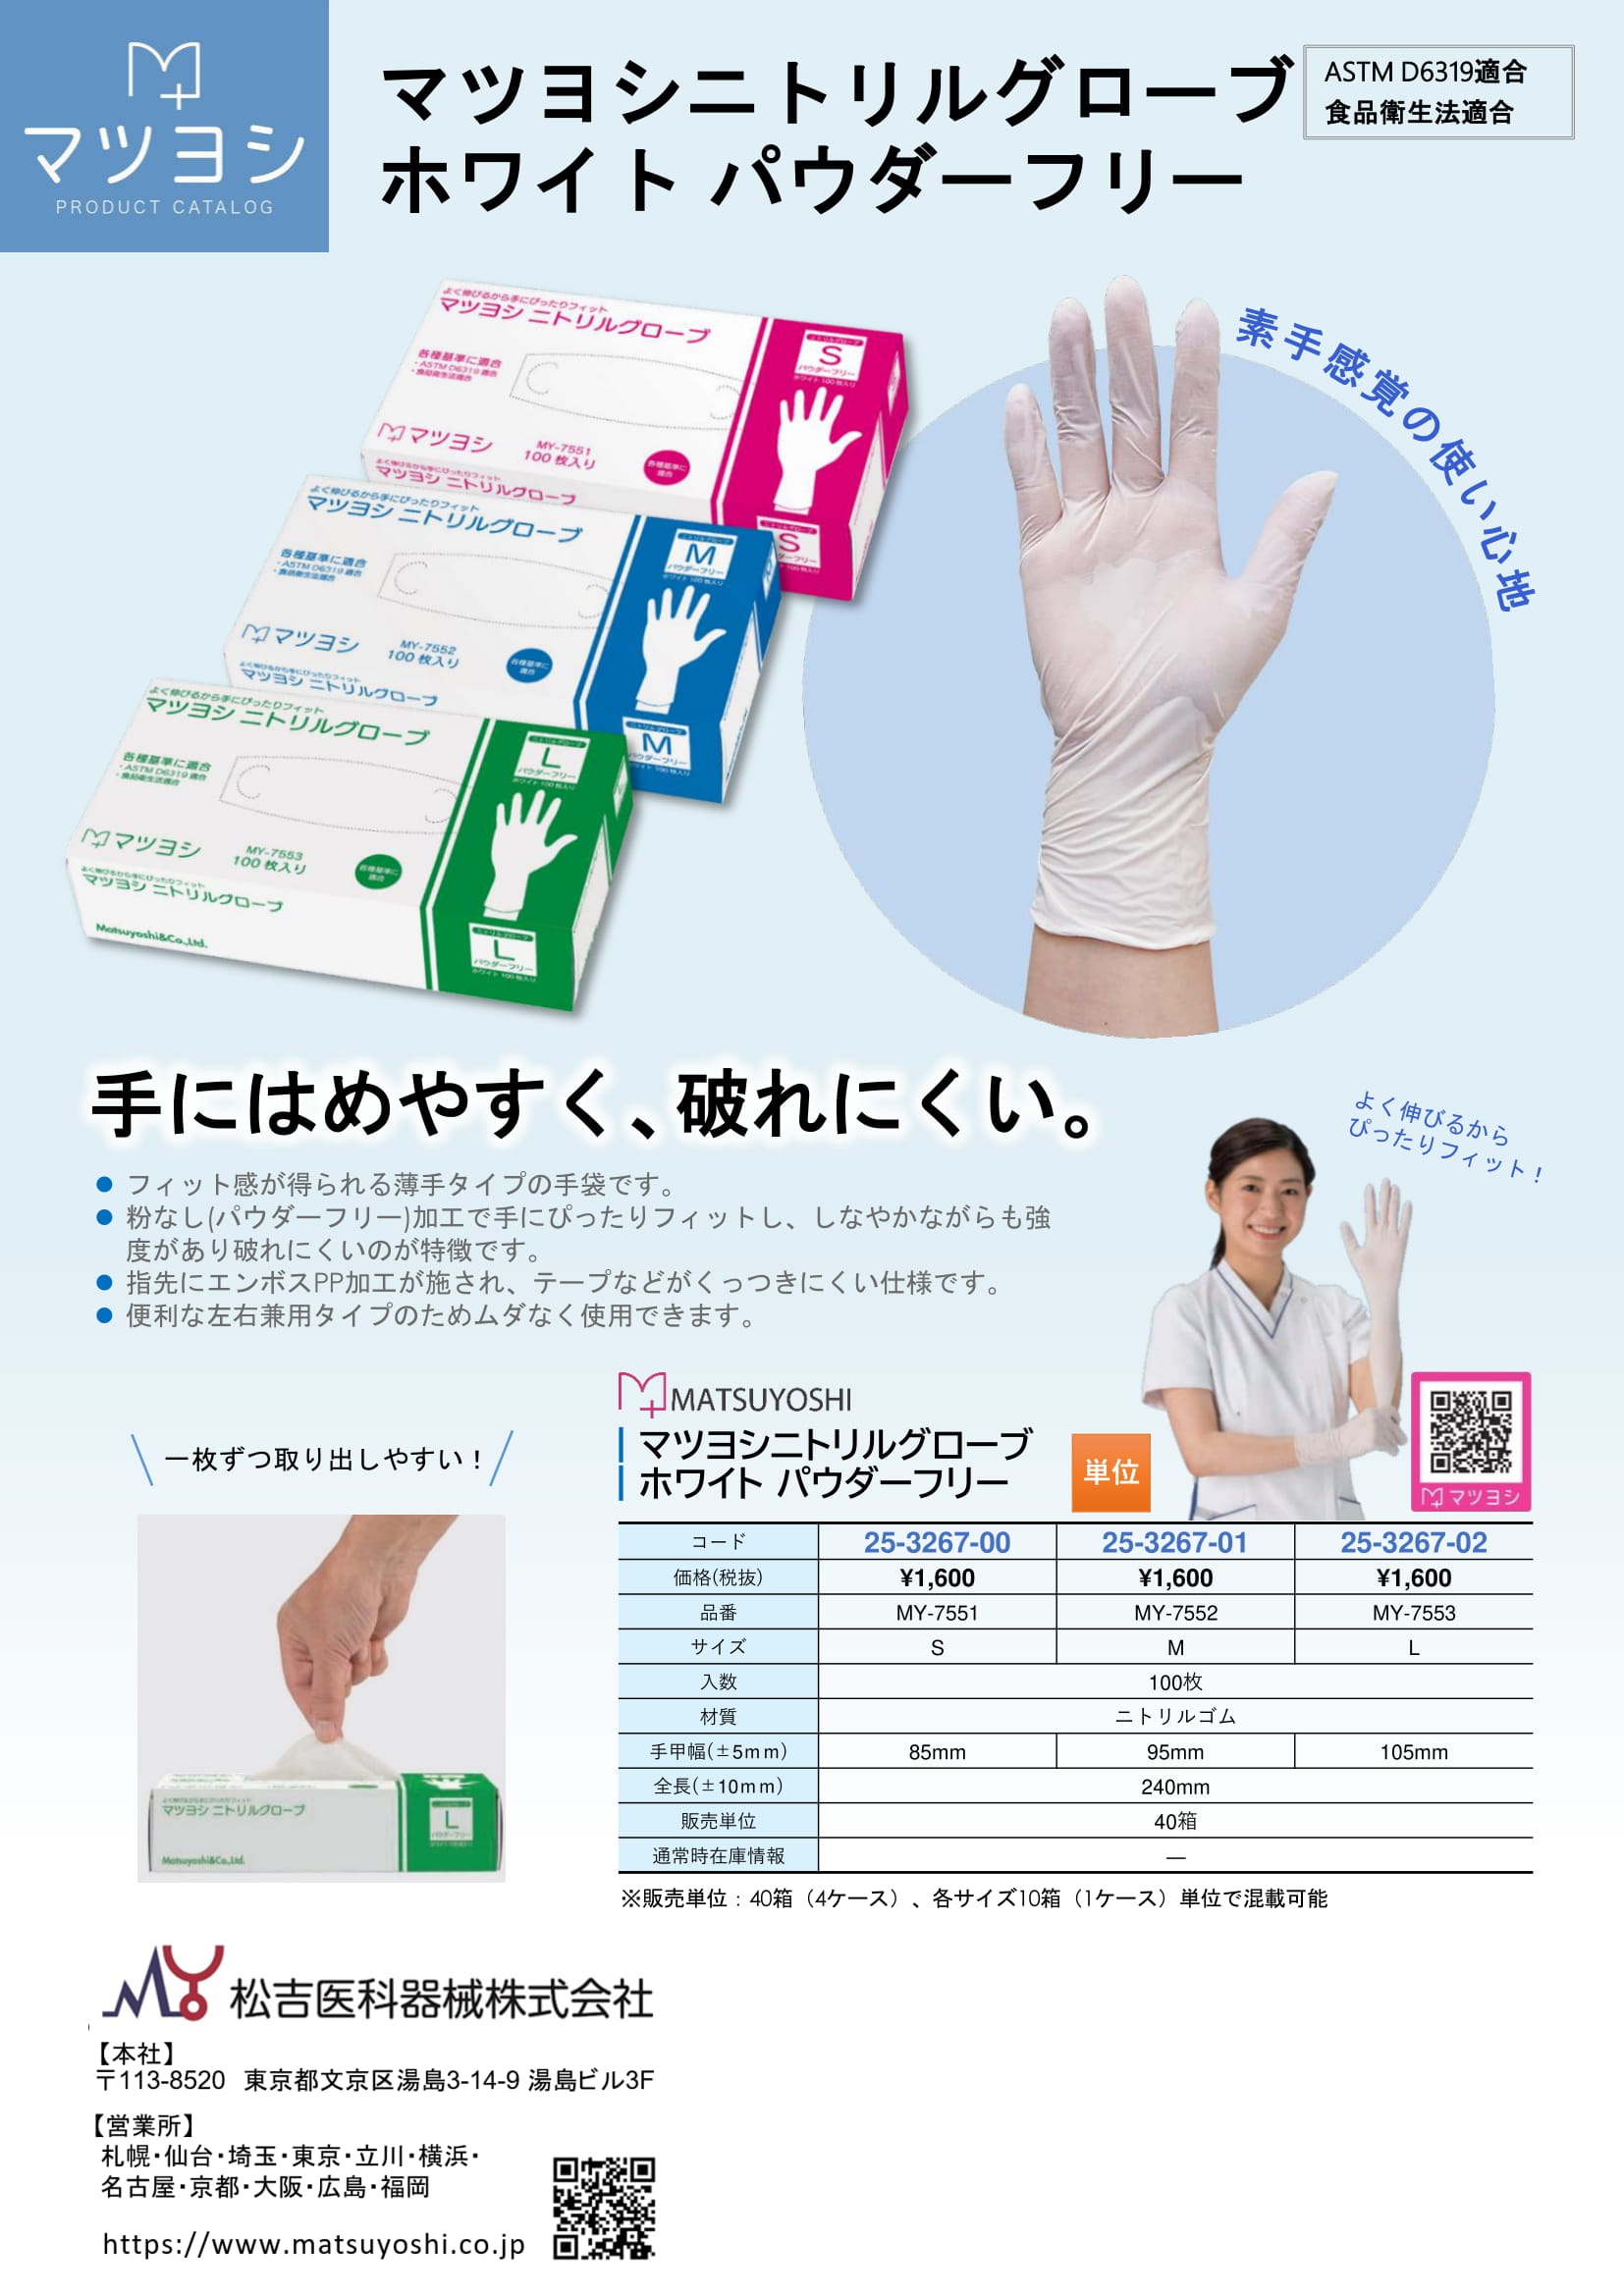 ニトリル手袋 ニトリルグローブ ホワイト 3サイズ 100枚 松吉医科器械 